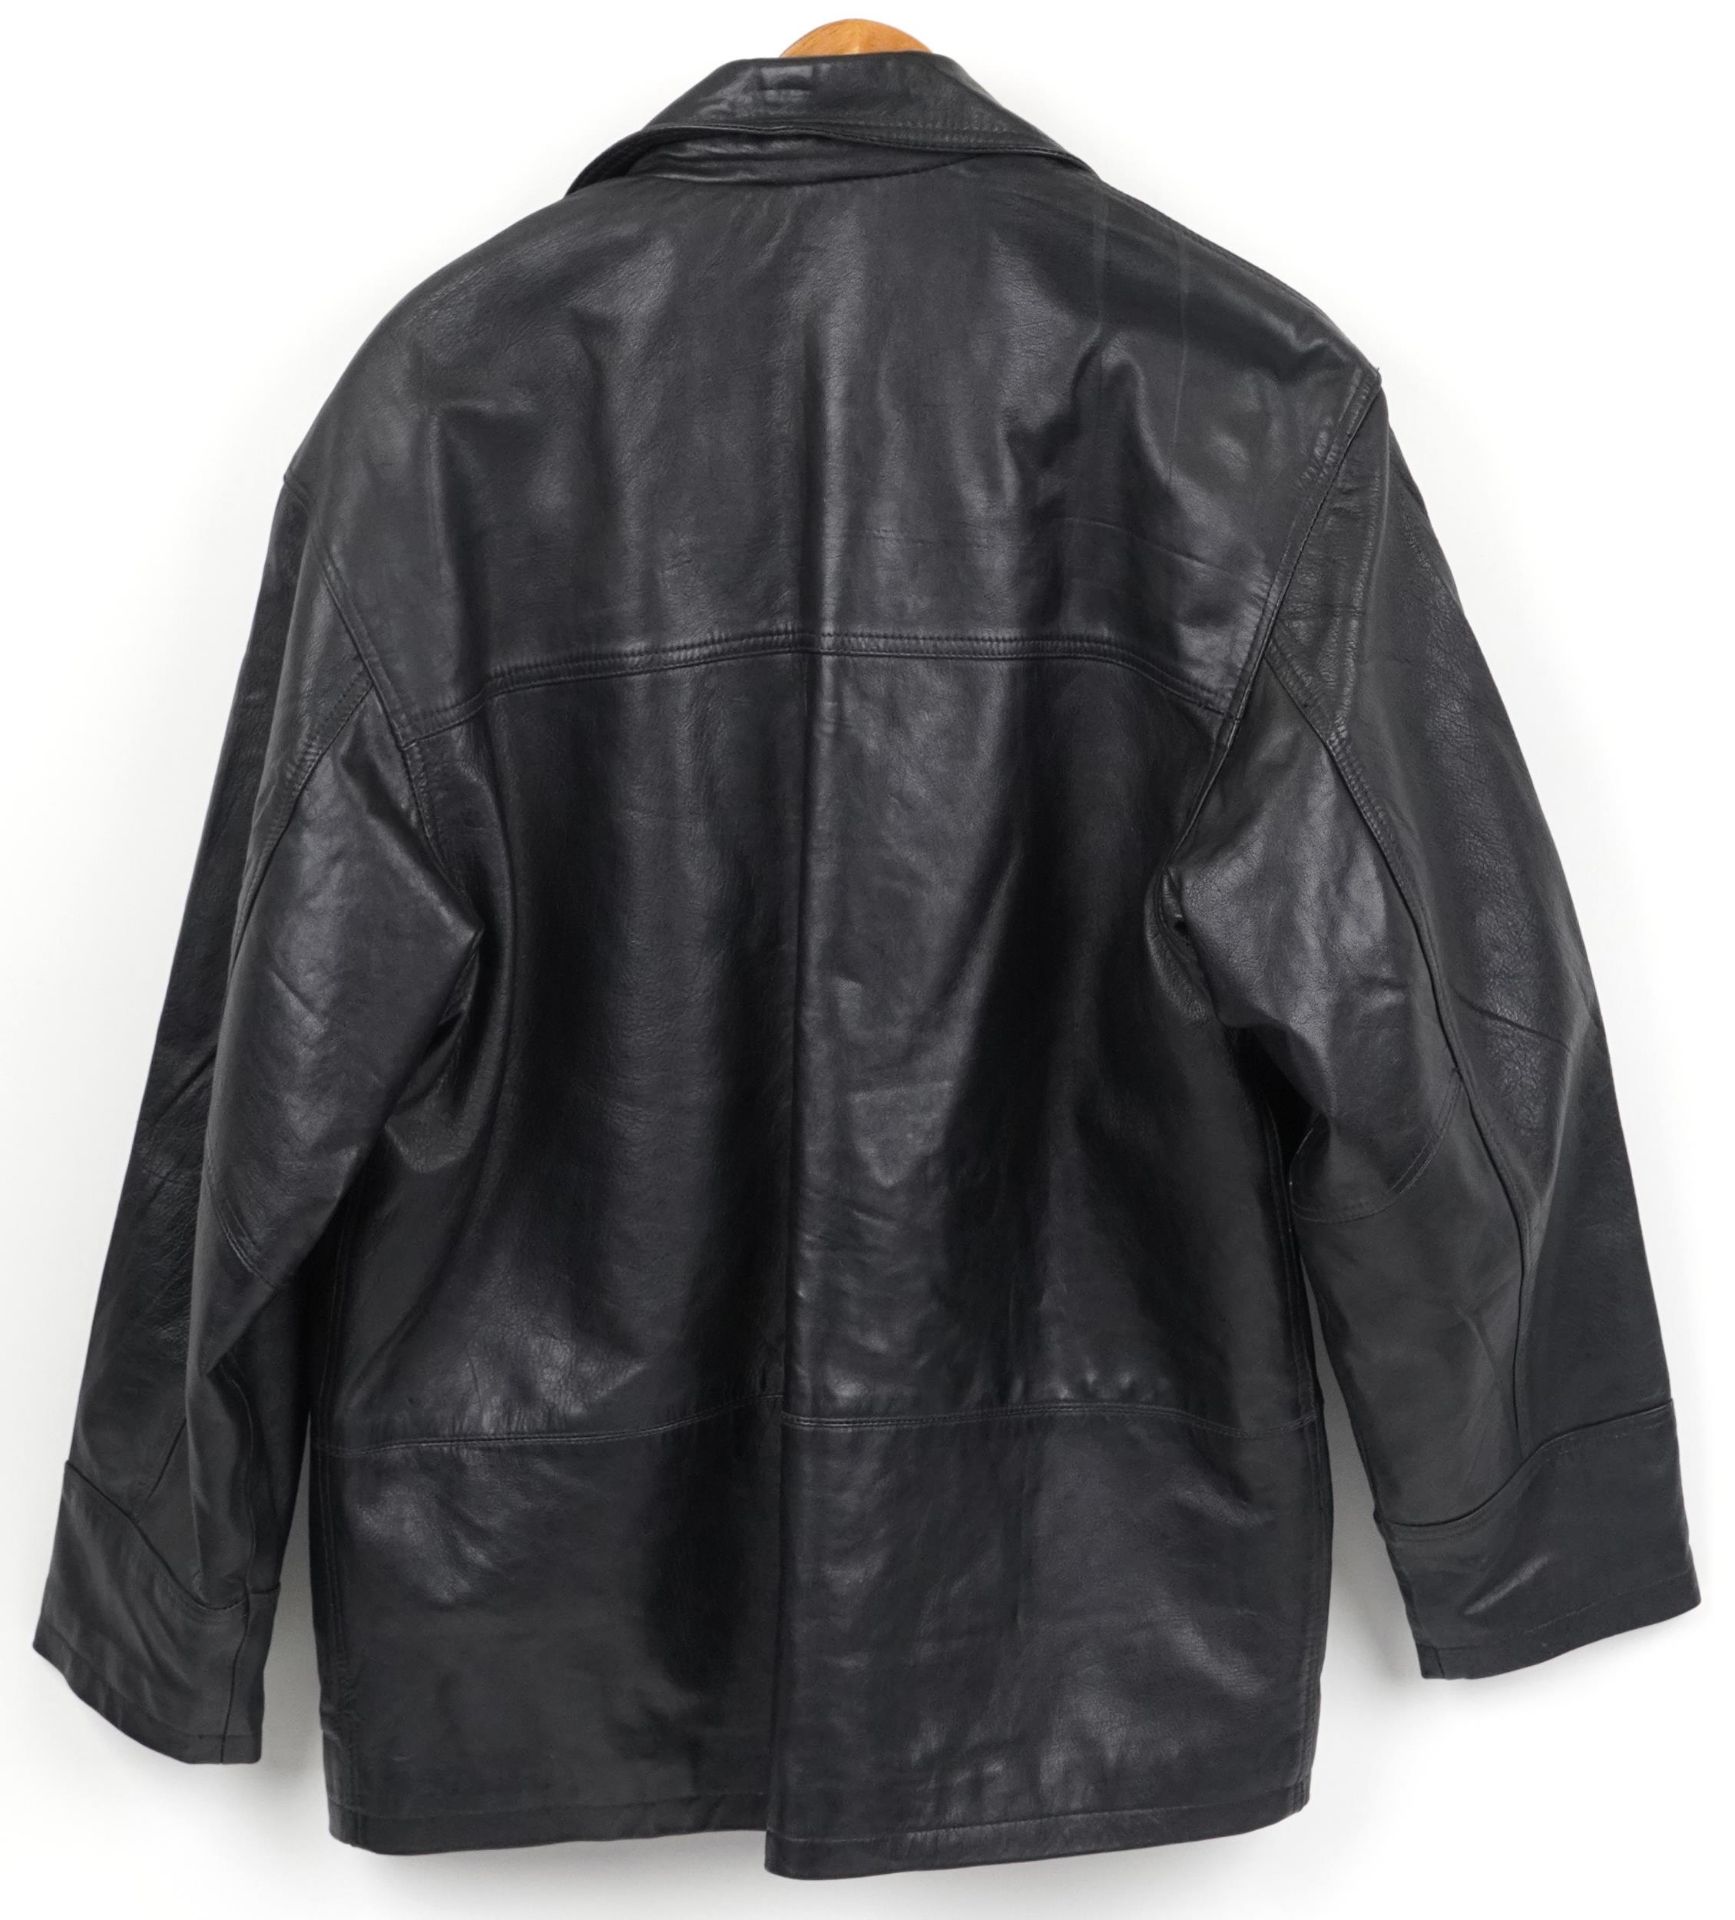 Gentlemen's Ironsides leather coat, size Medium - Image 3 of 3